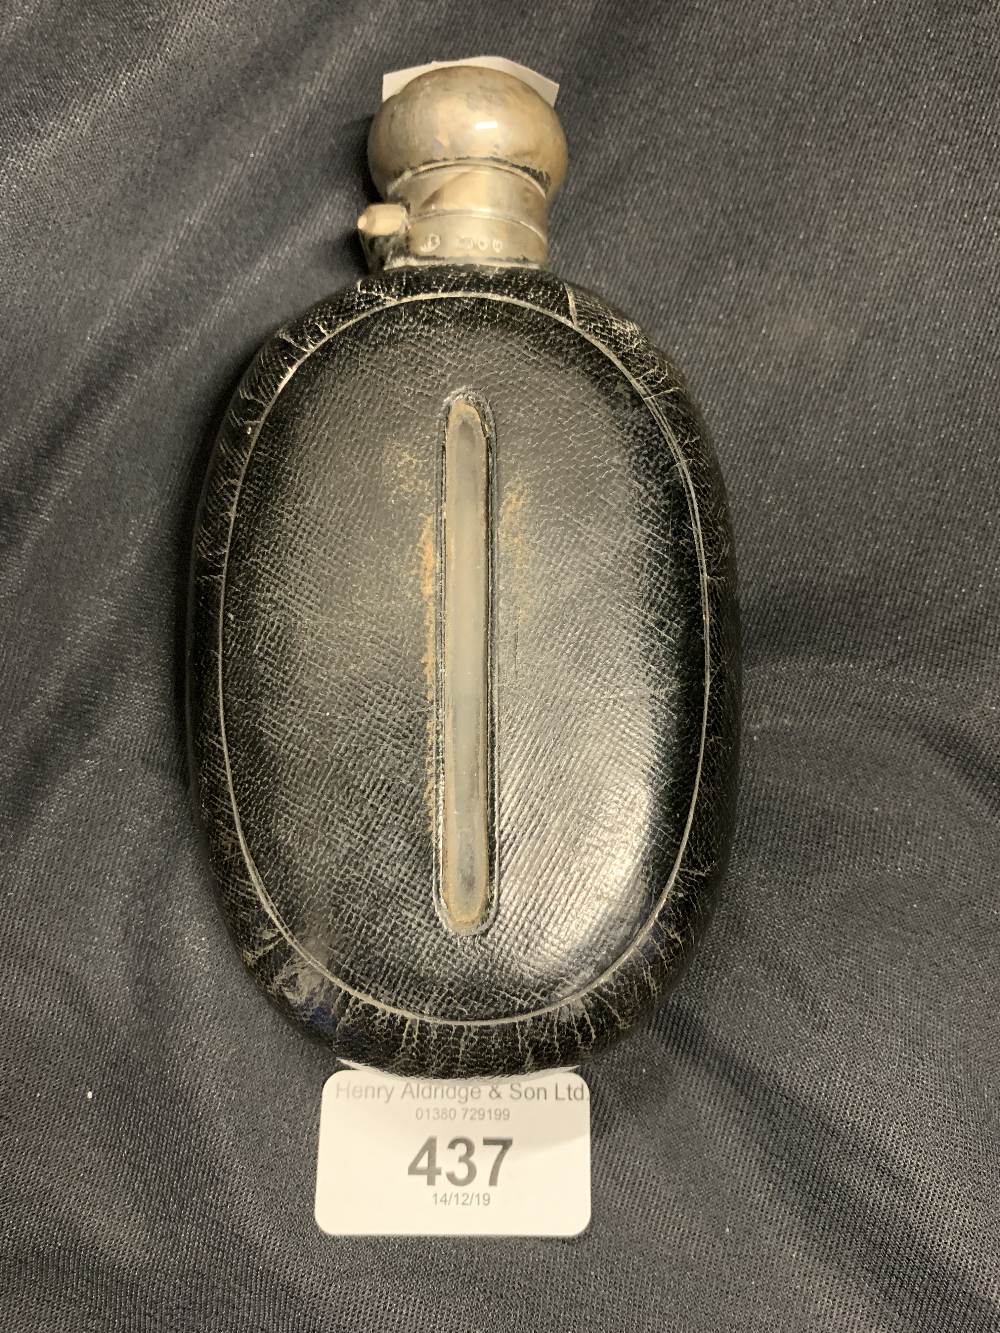 Hallmarked Silver: Leather bound glass hip flask with hallmarked collar.